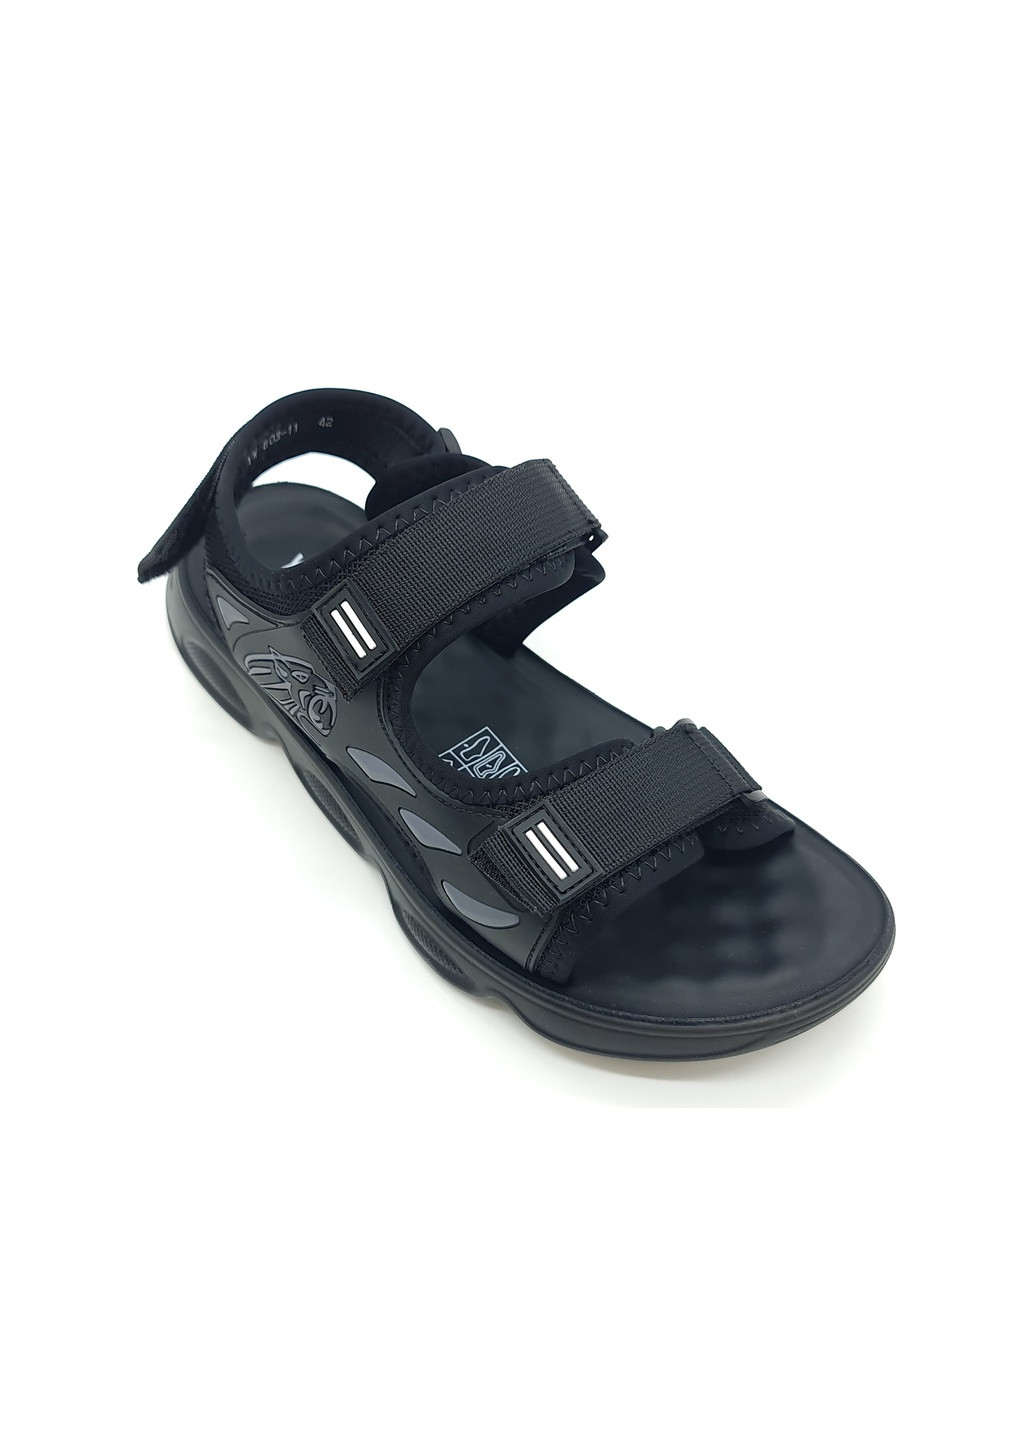 мужские сандалии черные текстиль ya-14-2 26 см (р) Yalasou